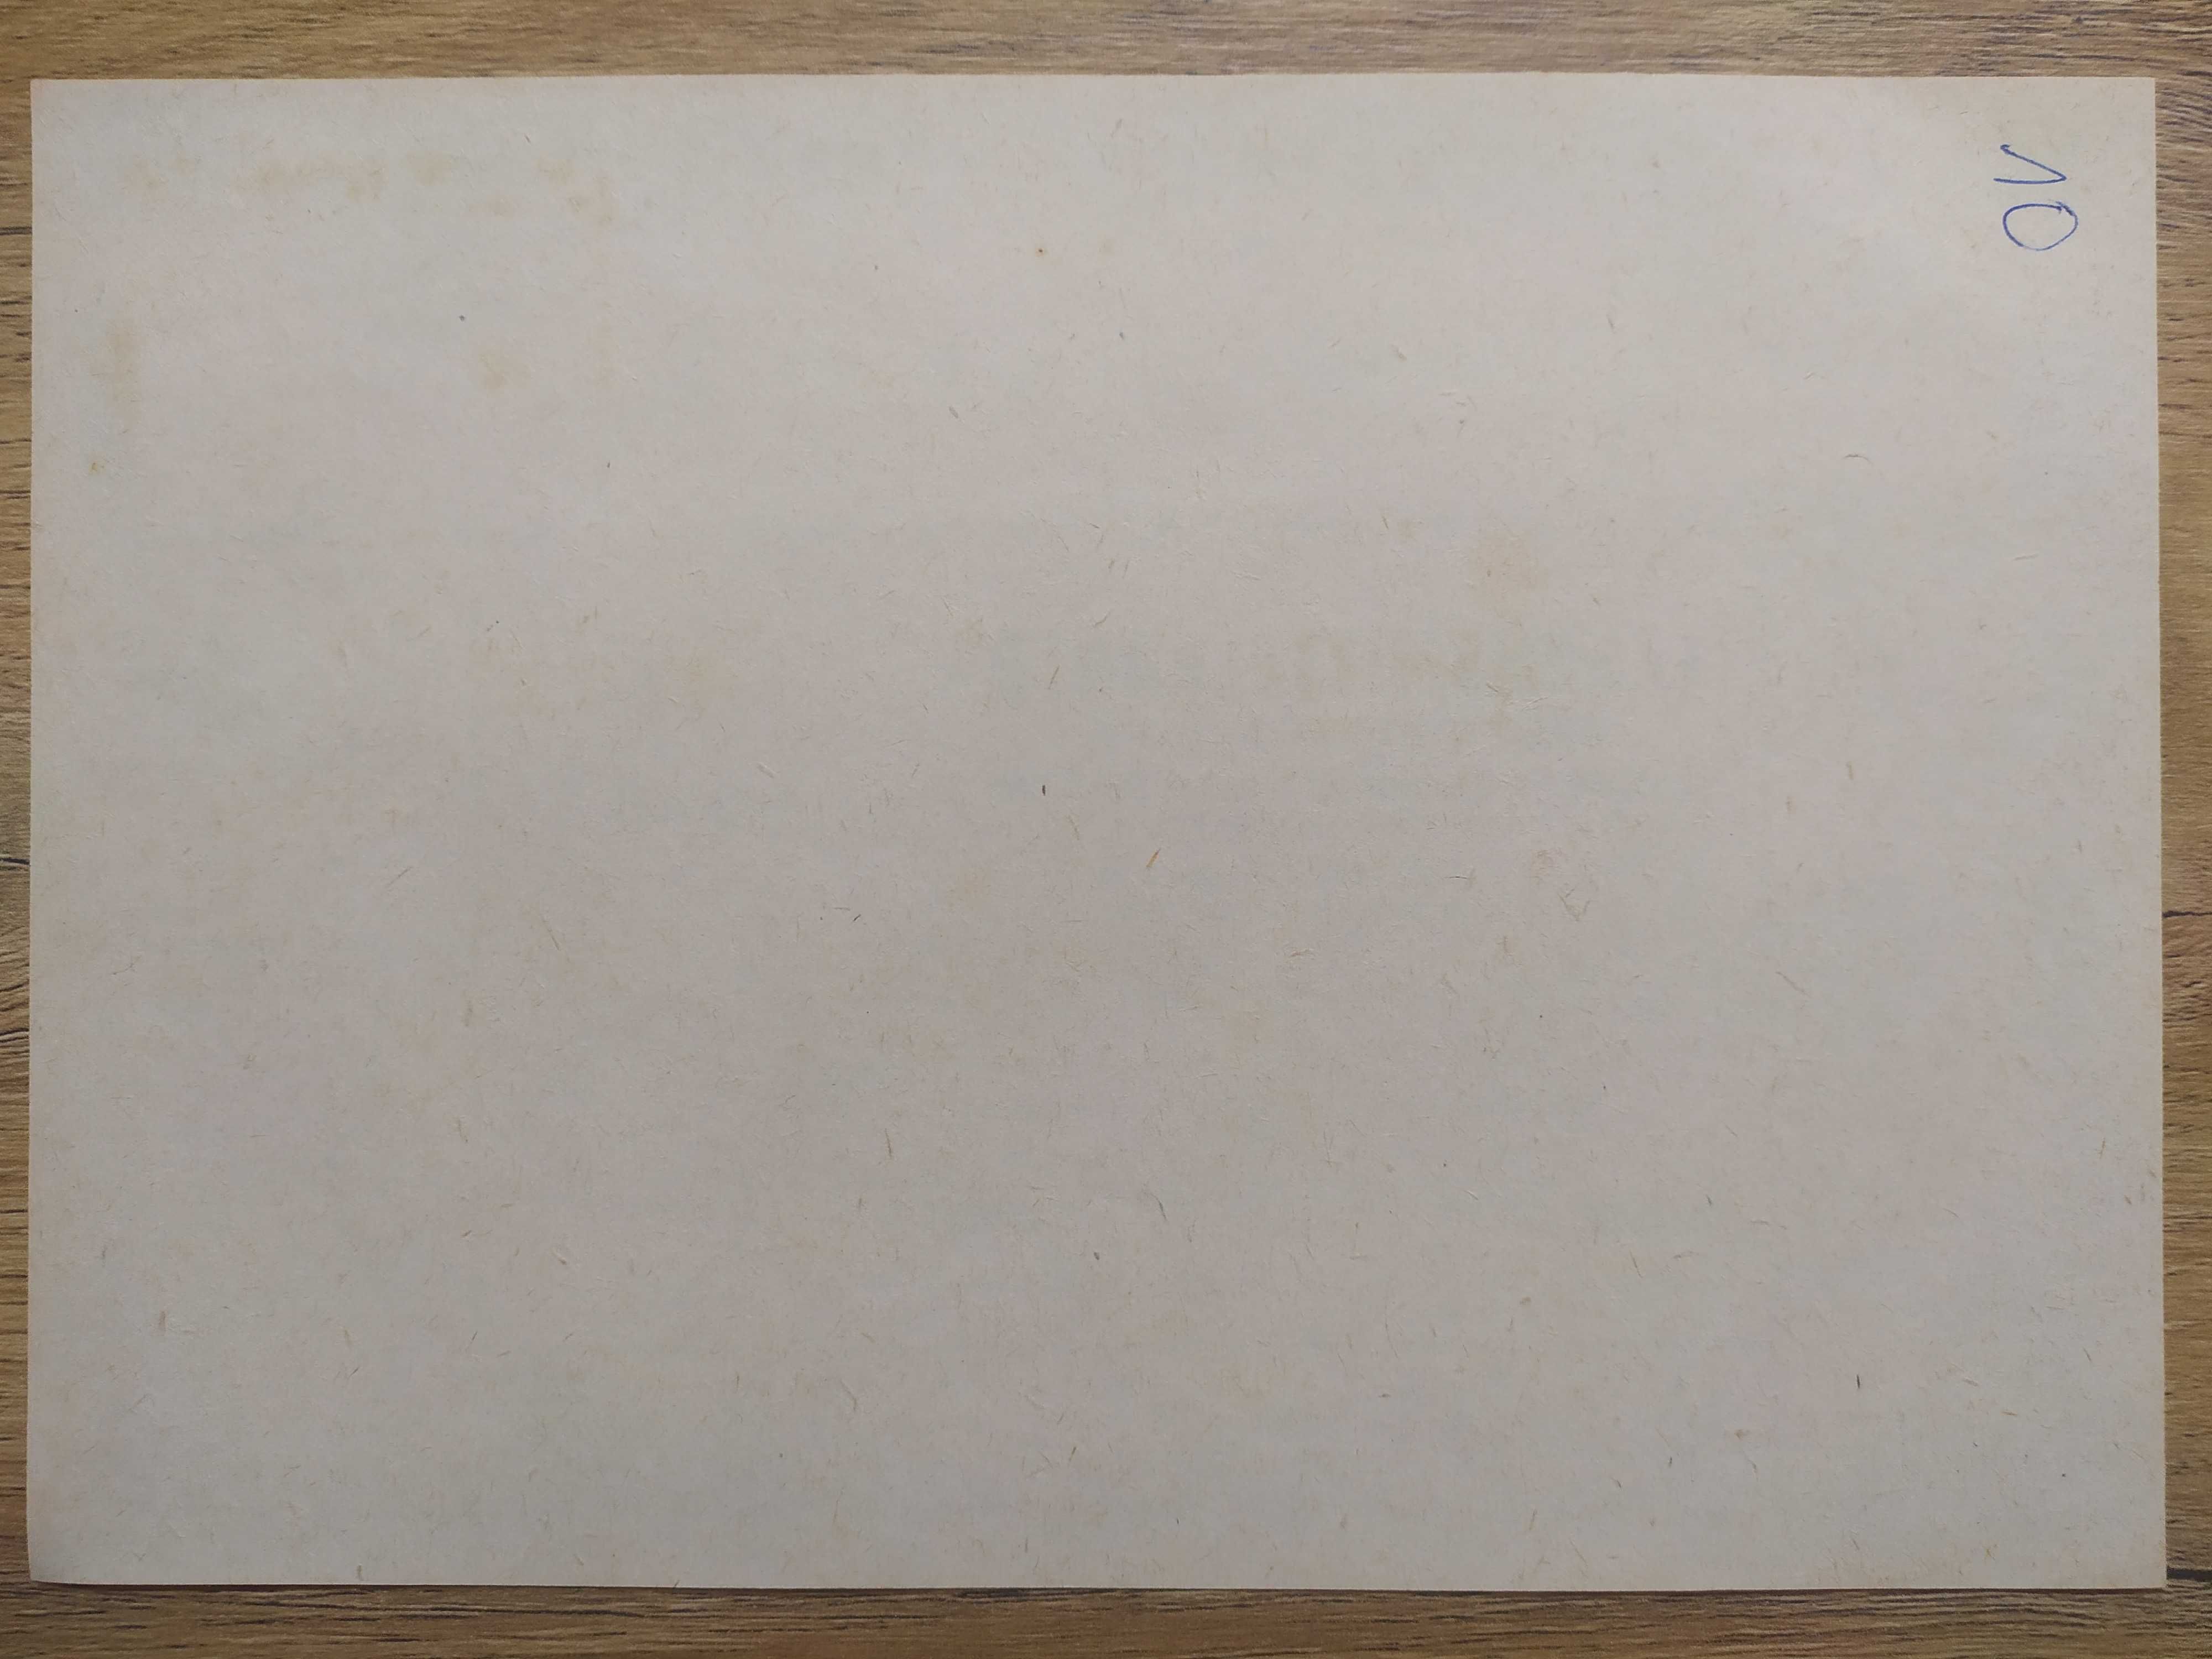 Karta żywnościowa - Lebensmittelkarte z sierpnia 1944. Faksymile